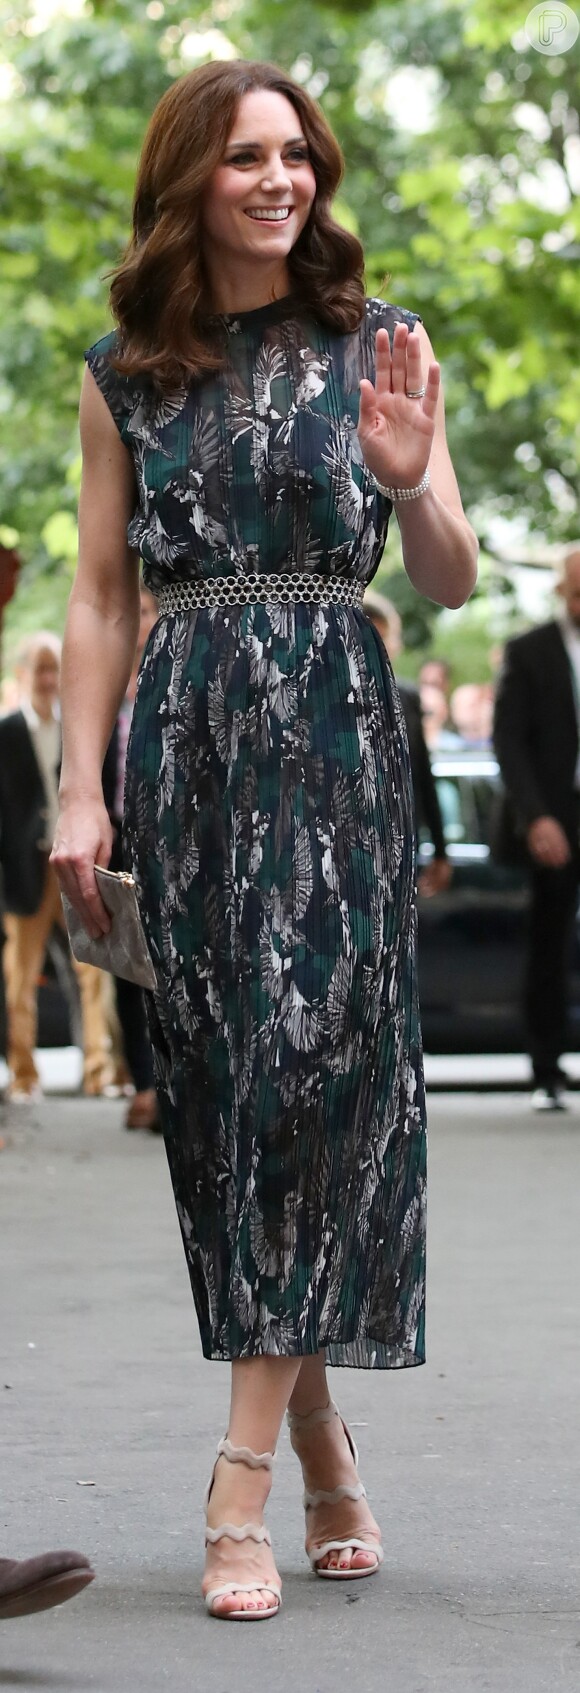 Kate Middleton investiu em look estampado com vestido assinado pelo designer alemão Markus Lupfer e sandálias Prada